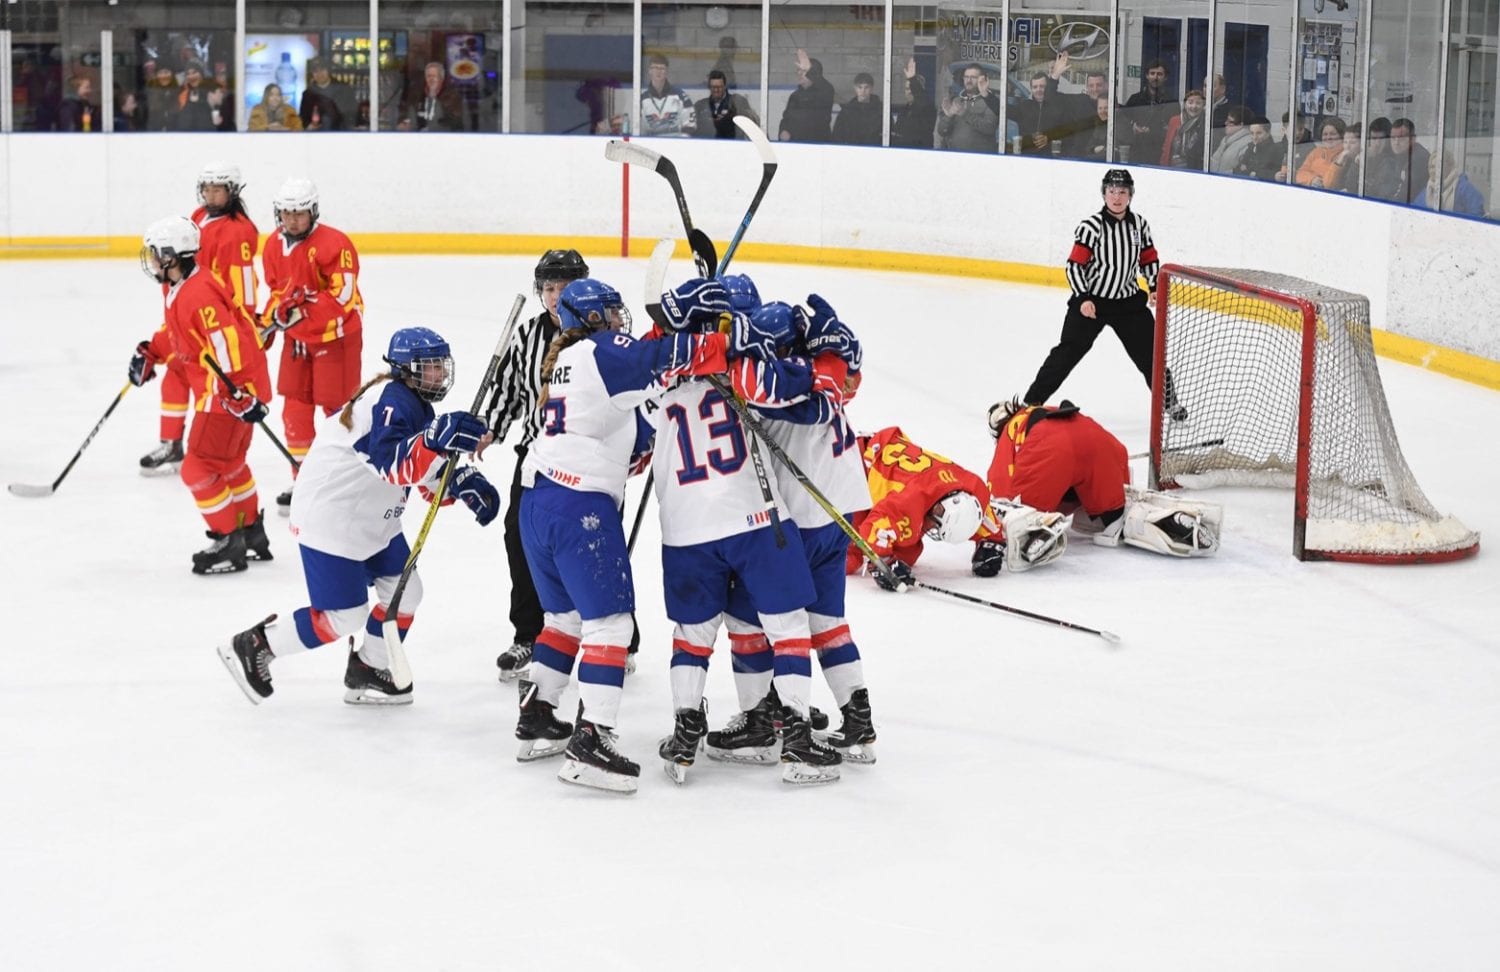 Wakeling Goal V China, British Ice Hockey